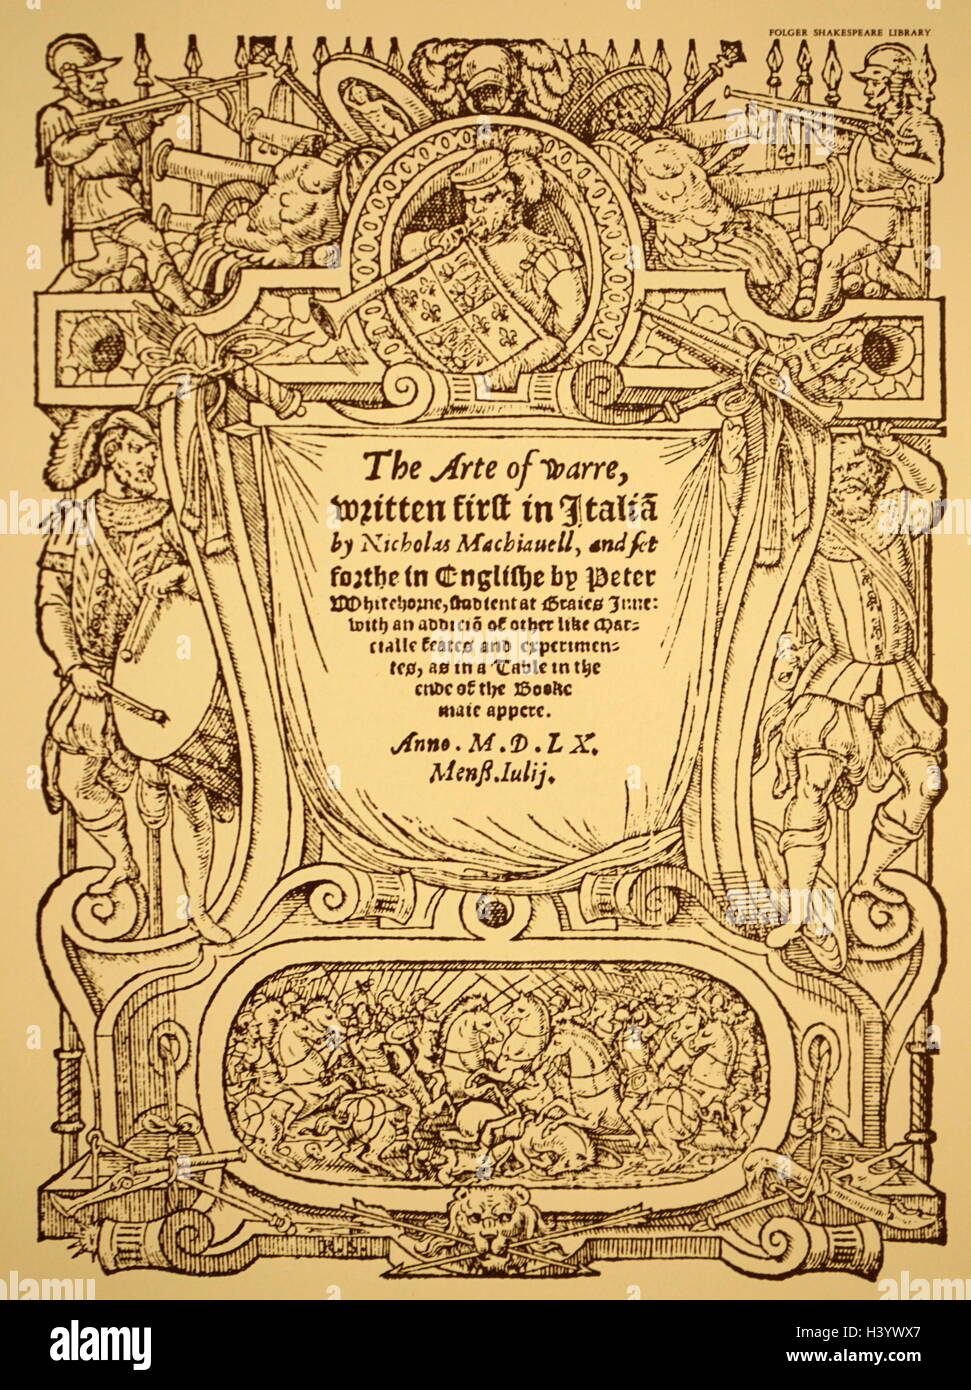 Titelblatt der "Kunst des Krieges" in englischer Sprache (1562) von Niccolo Machiavelli (1469-1527), einem italienischen Renaissance Historiker und Diplomat. Vom 16. Jahrhundert Stockfoto